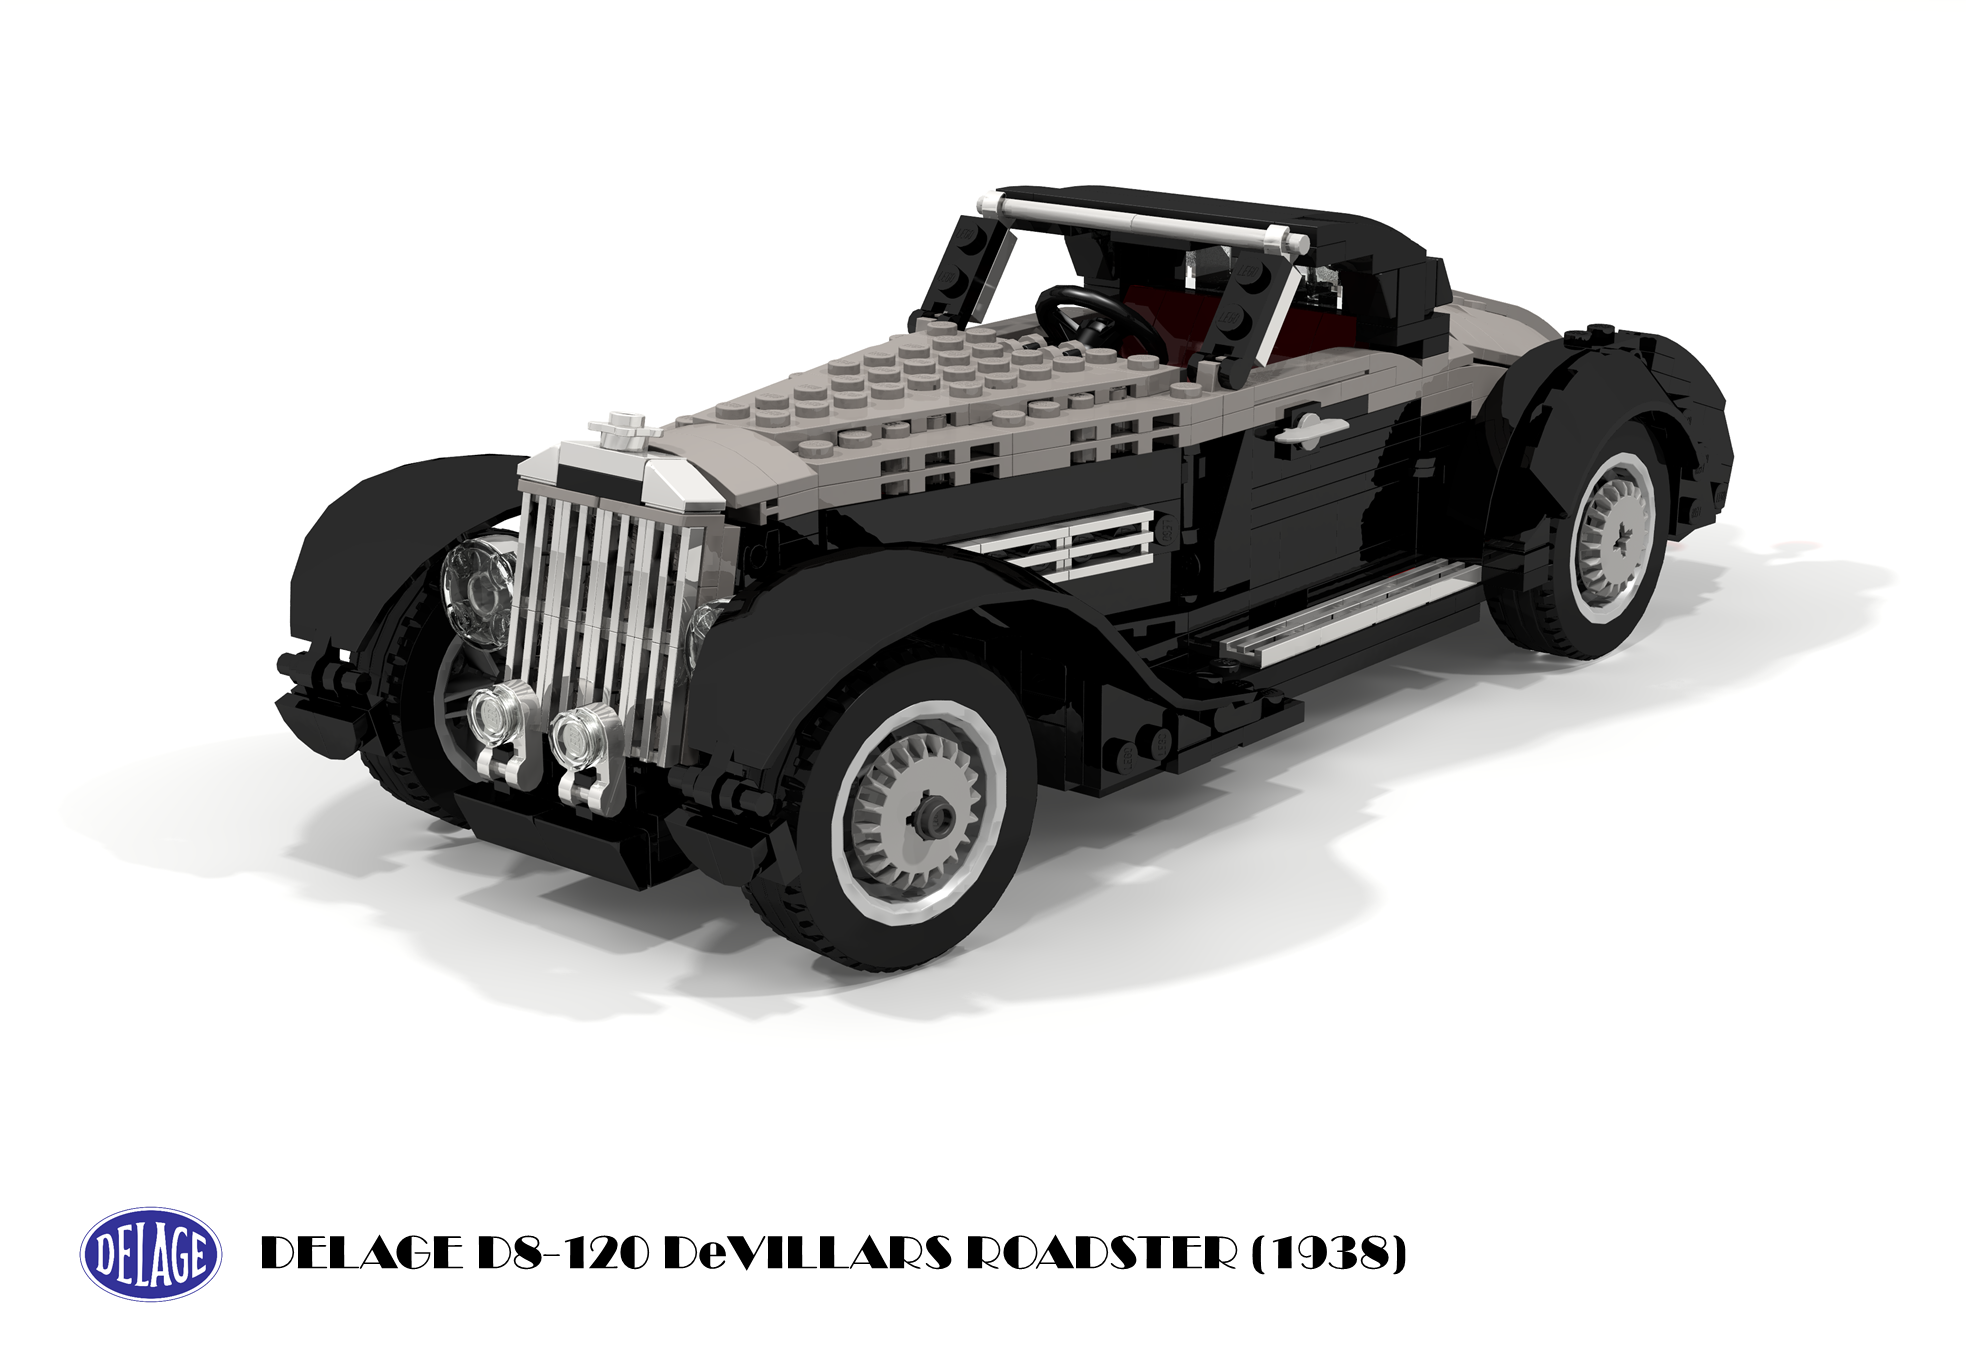 1938_delage_d8-120_devillars_roadster.png